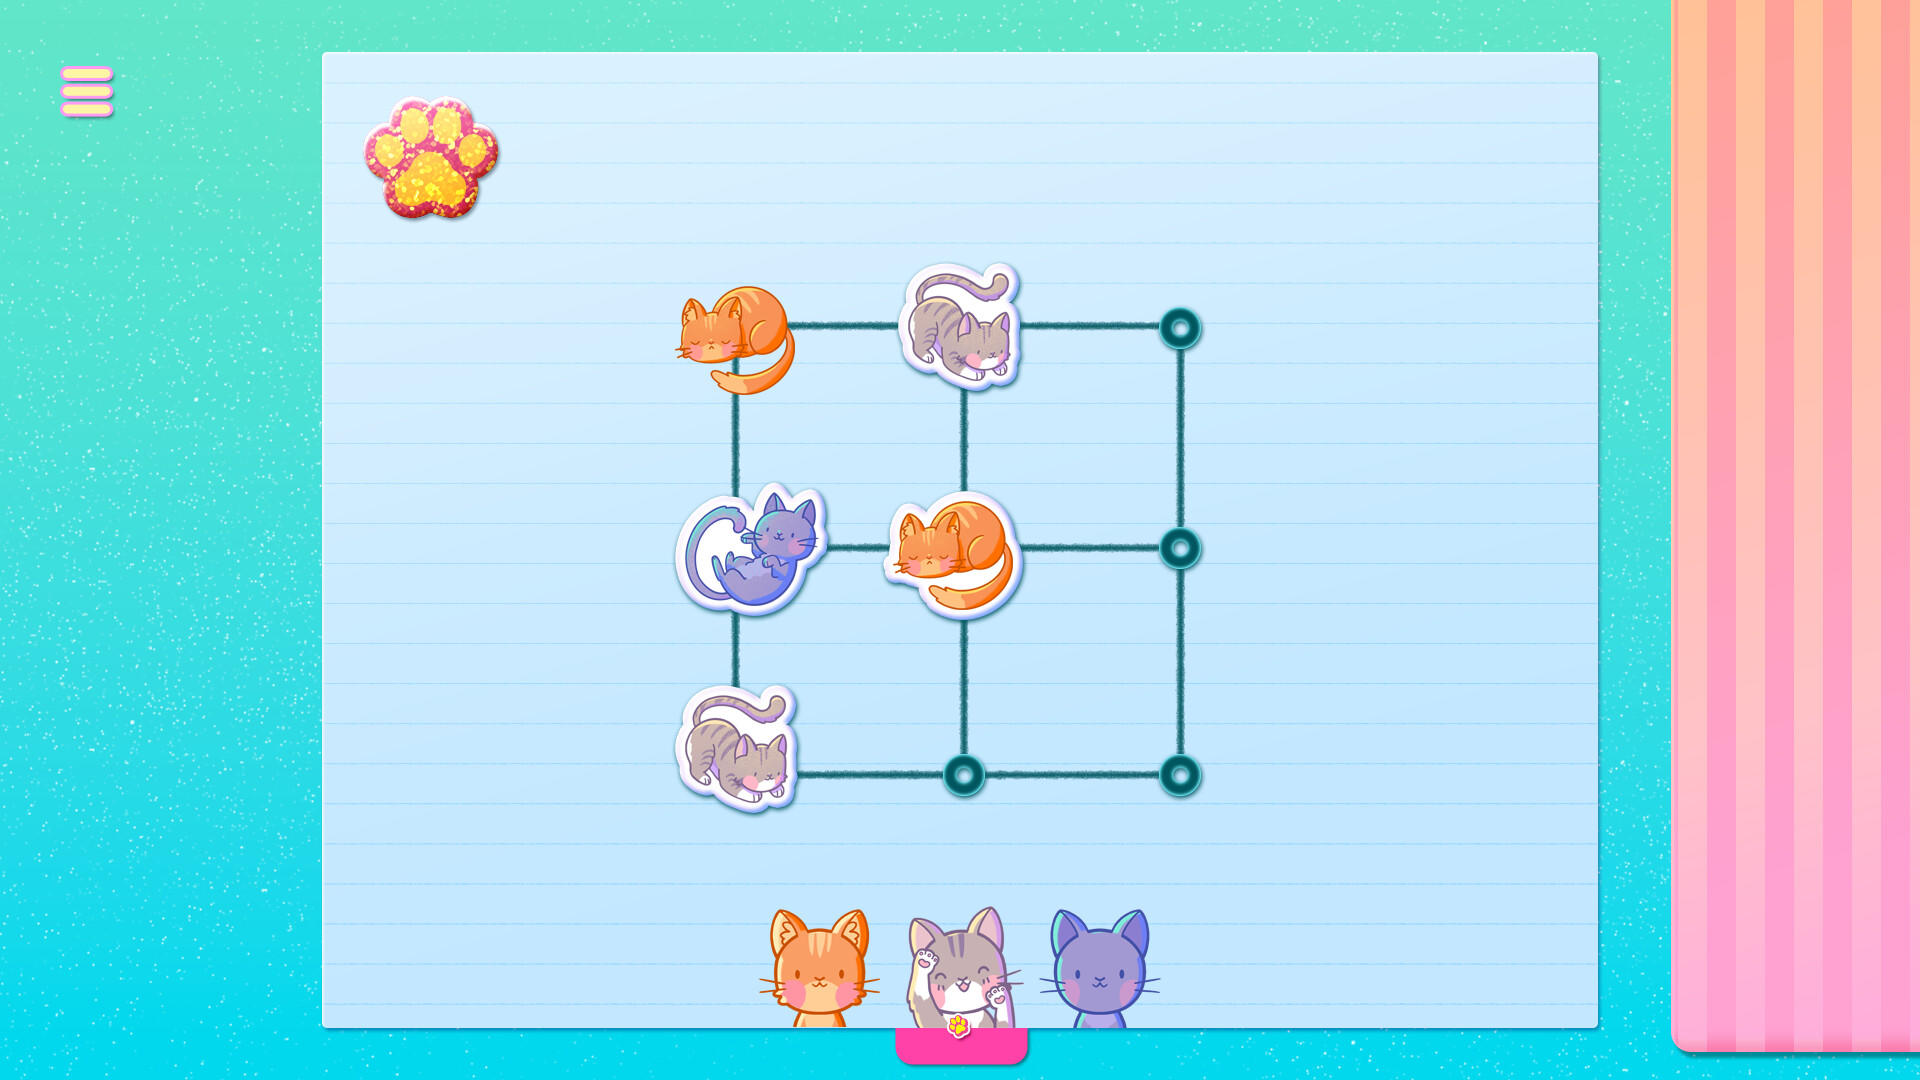 Sticker Kittens 게임 스크린 샷